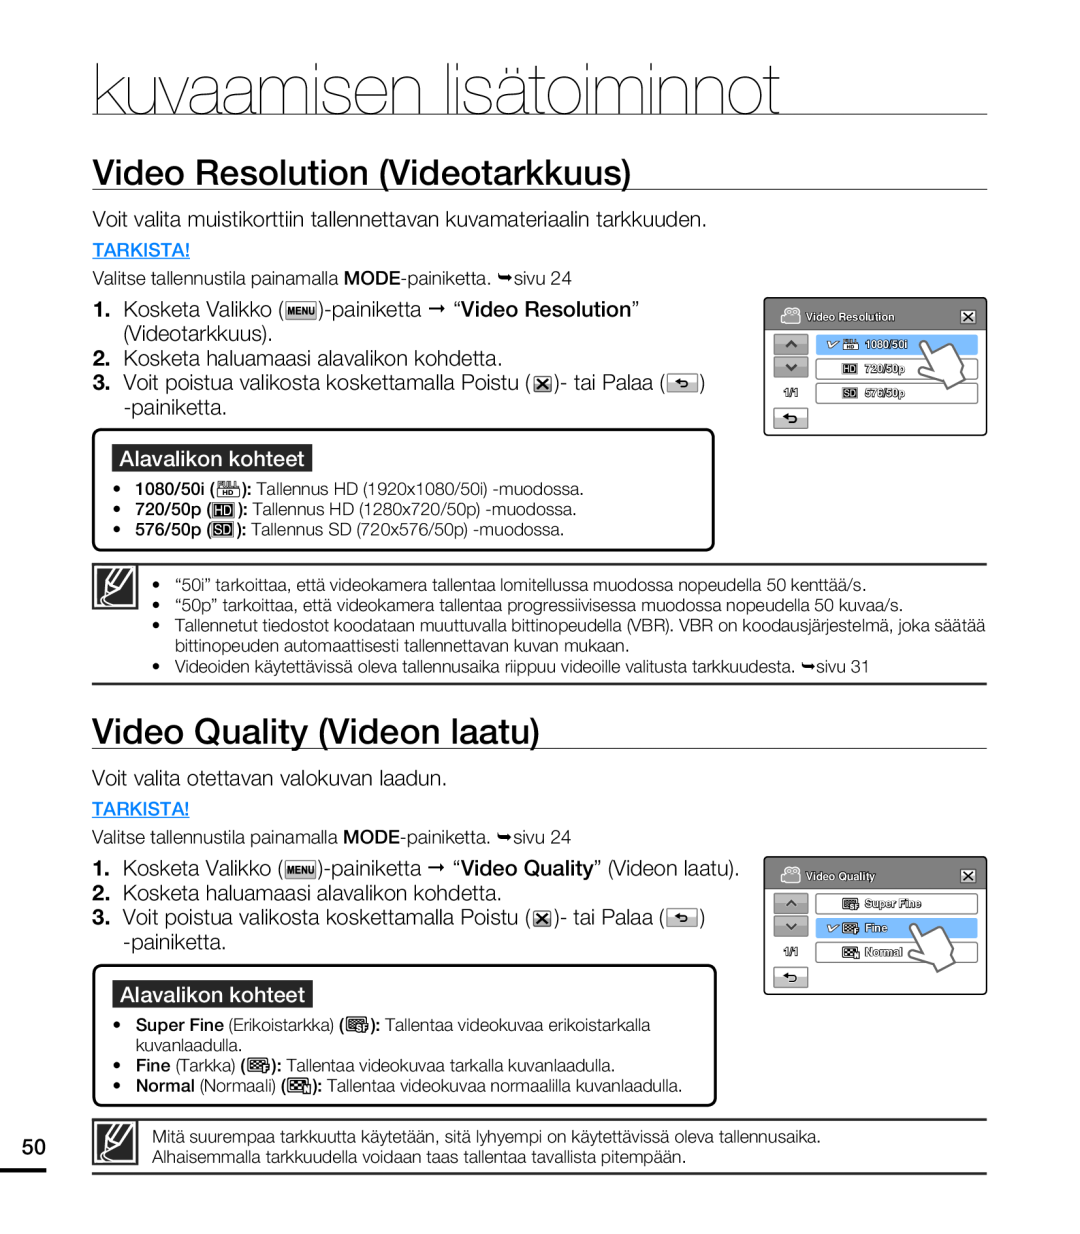 Samsung HMX-T10WP/EDC manual Video Resolution Videotarkkuus, Video Quality Videon laatu, kuvaamisen lisätoiminnot, Tarkista 